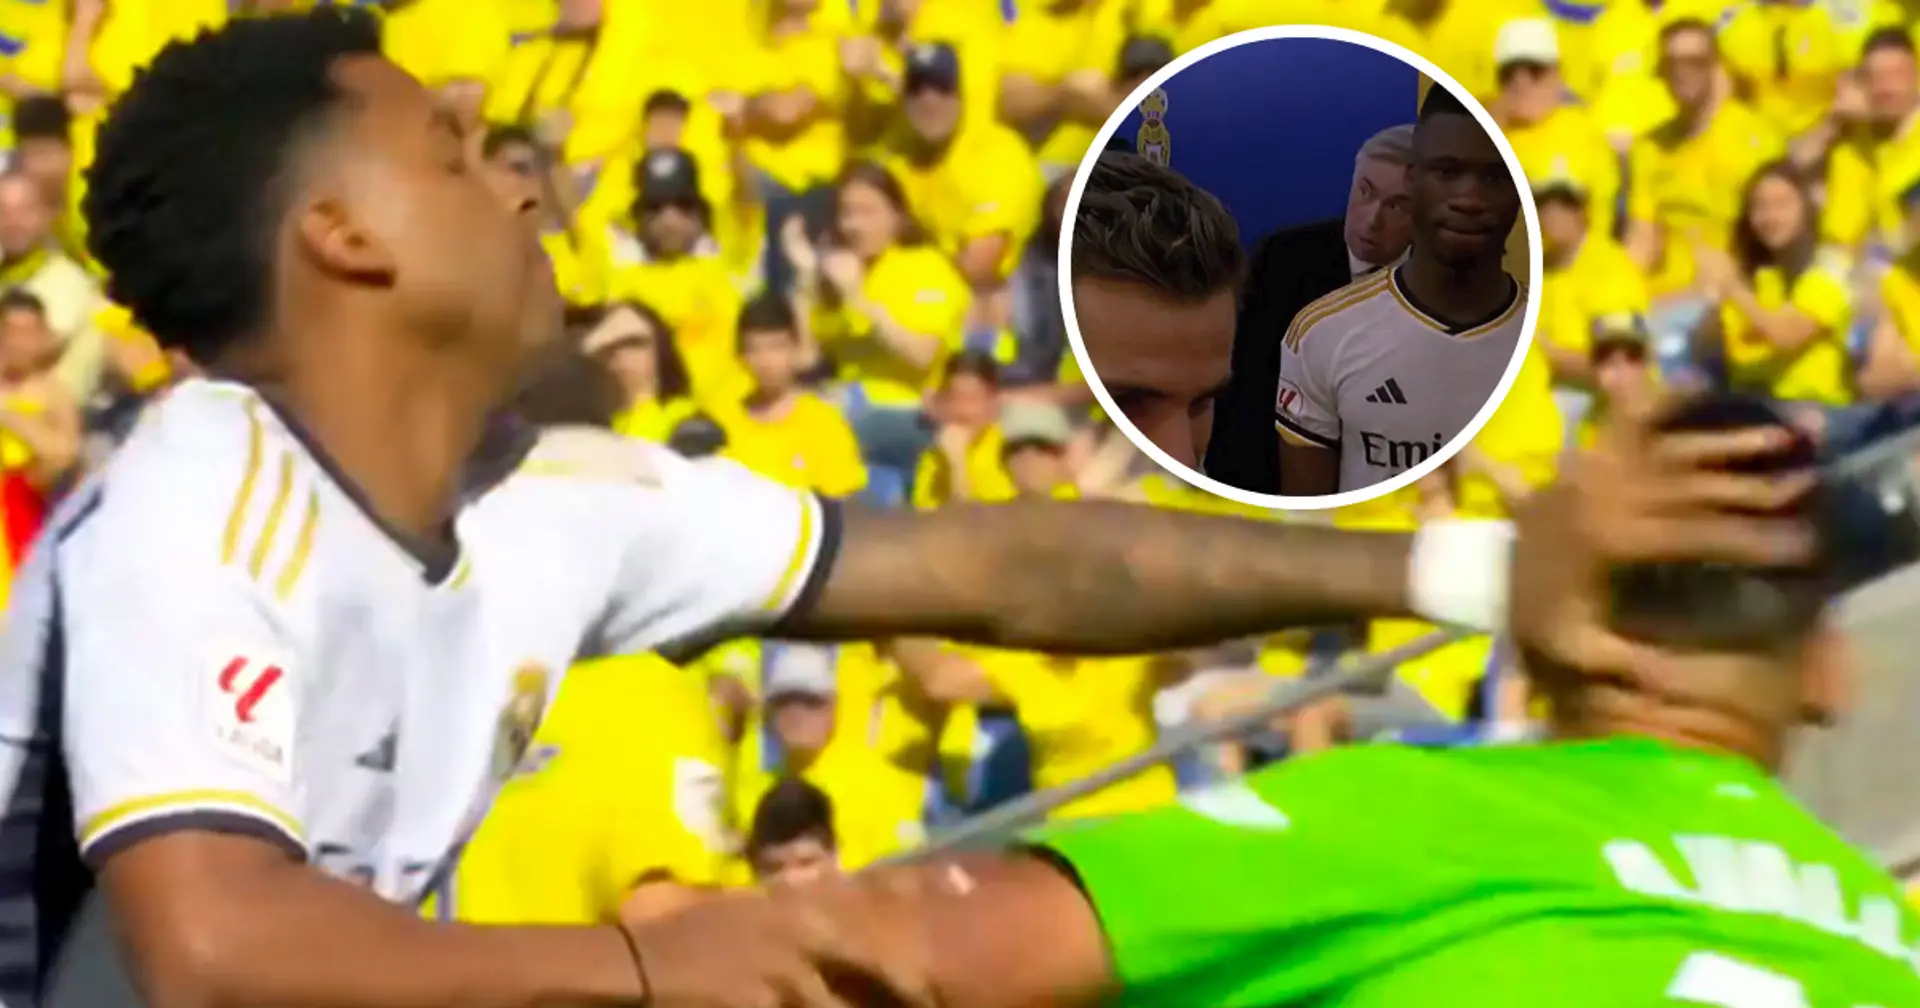 Une vidéo divulguée montre un arbitre disant au capitaine du Real que son joueur aurait dû être expulsé – ce même arbitre n'a montré qu'un jaune